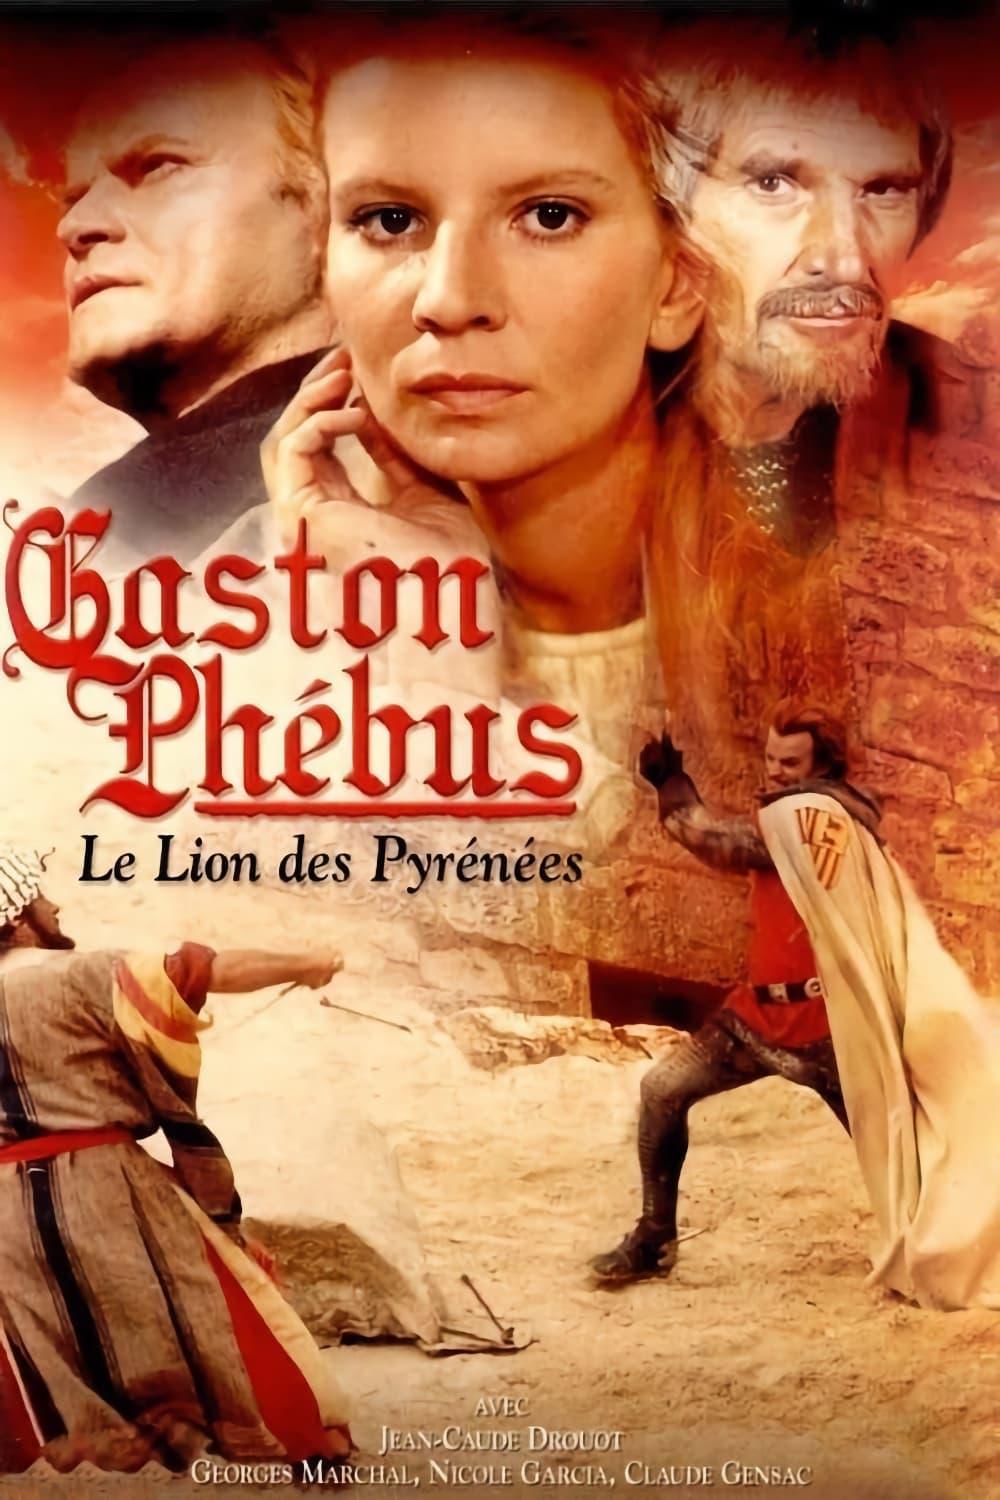 Affiche de la série Gaston Phébus poster